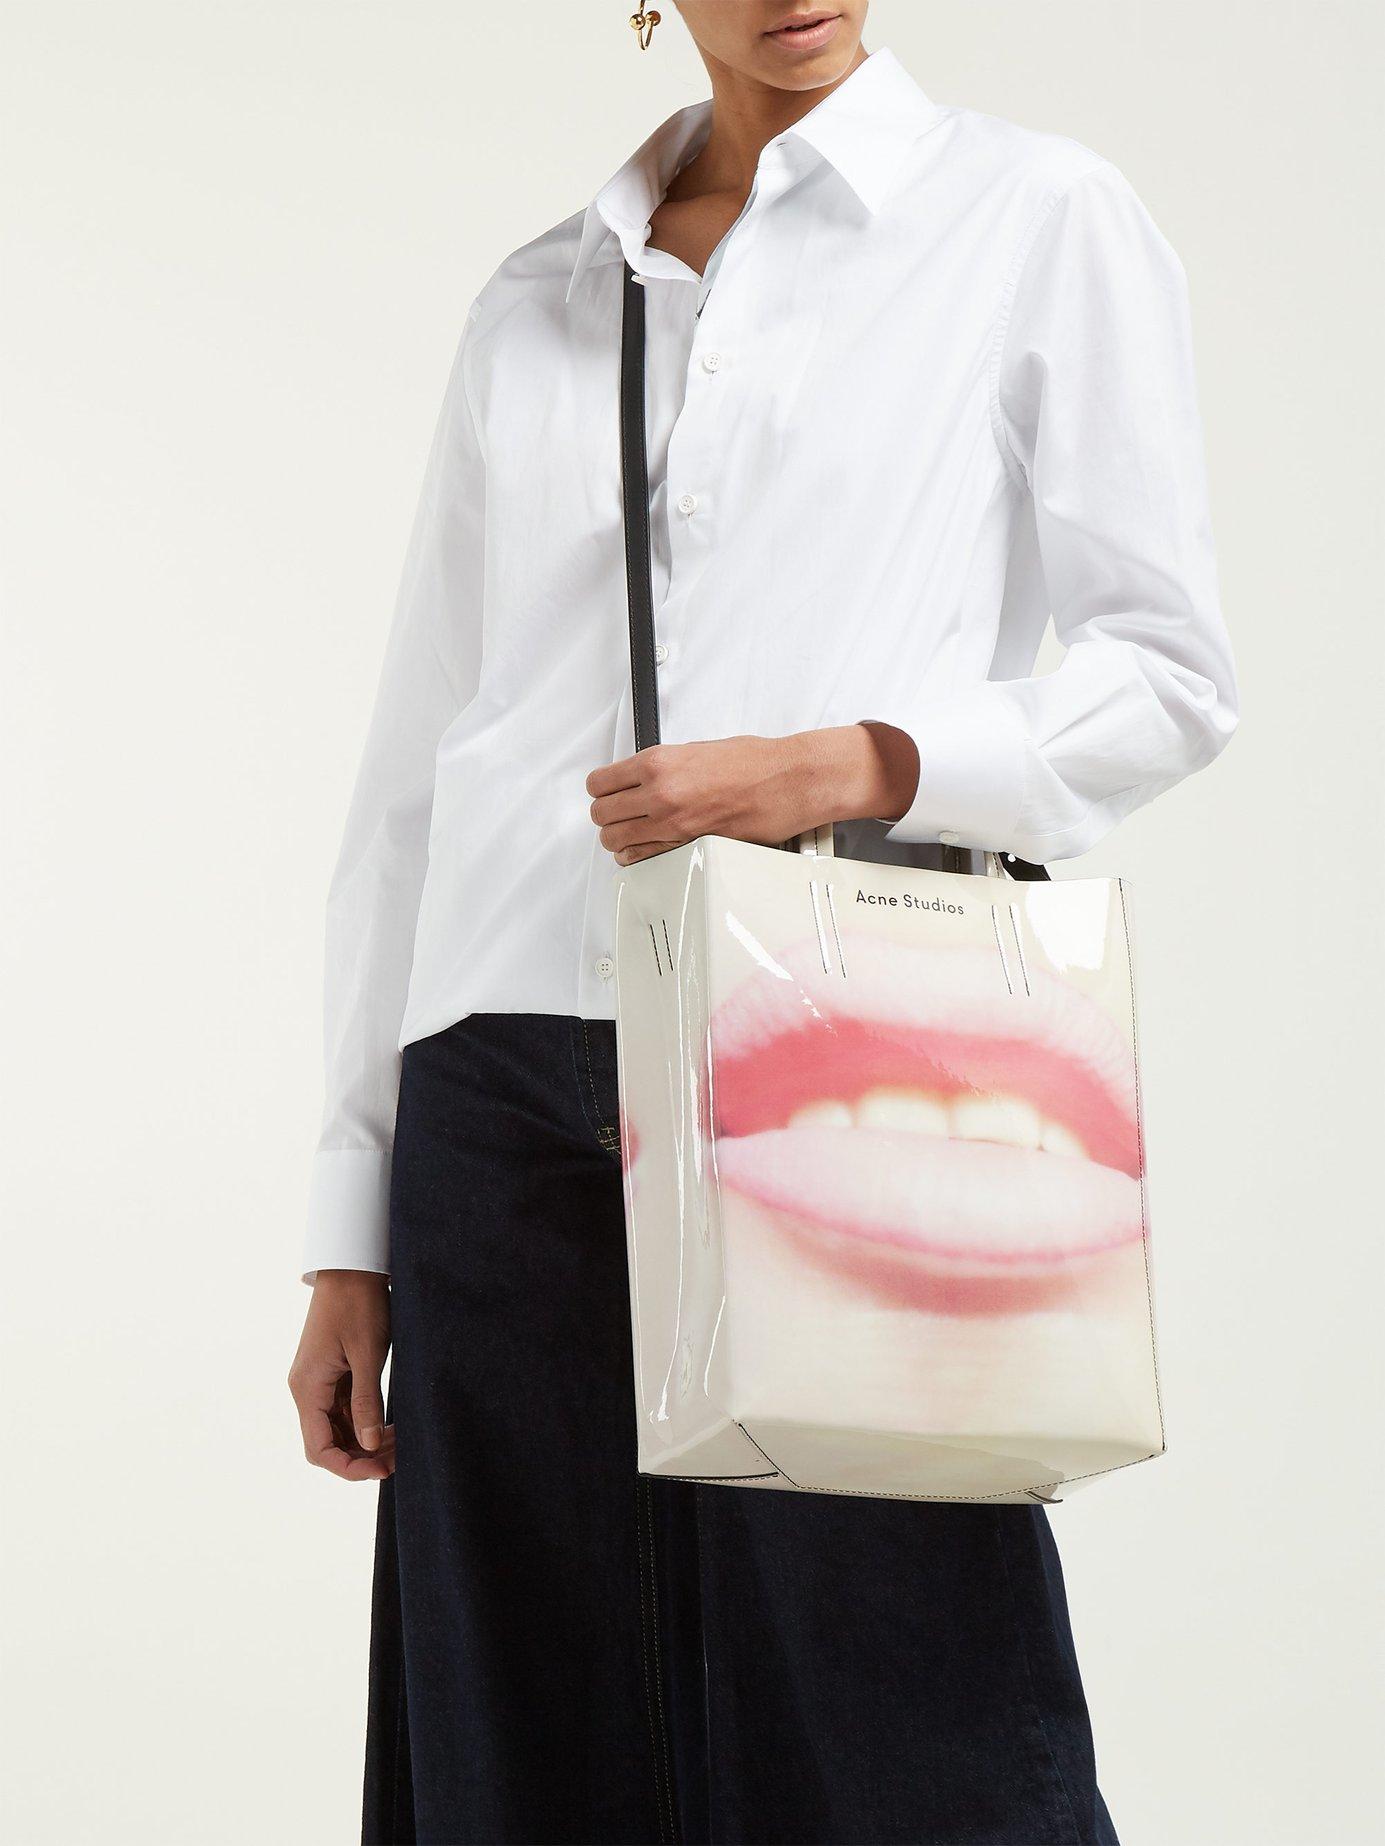 Acne Studios Baker Medium Lip Print Tote Bag in Pink - Lyst